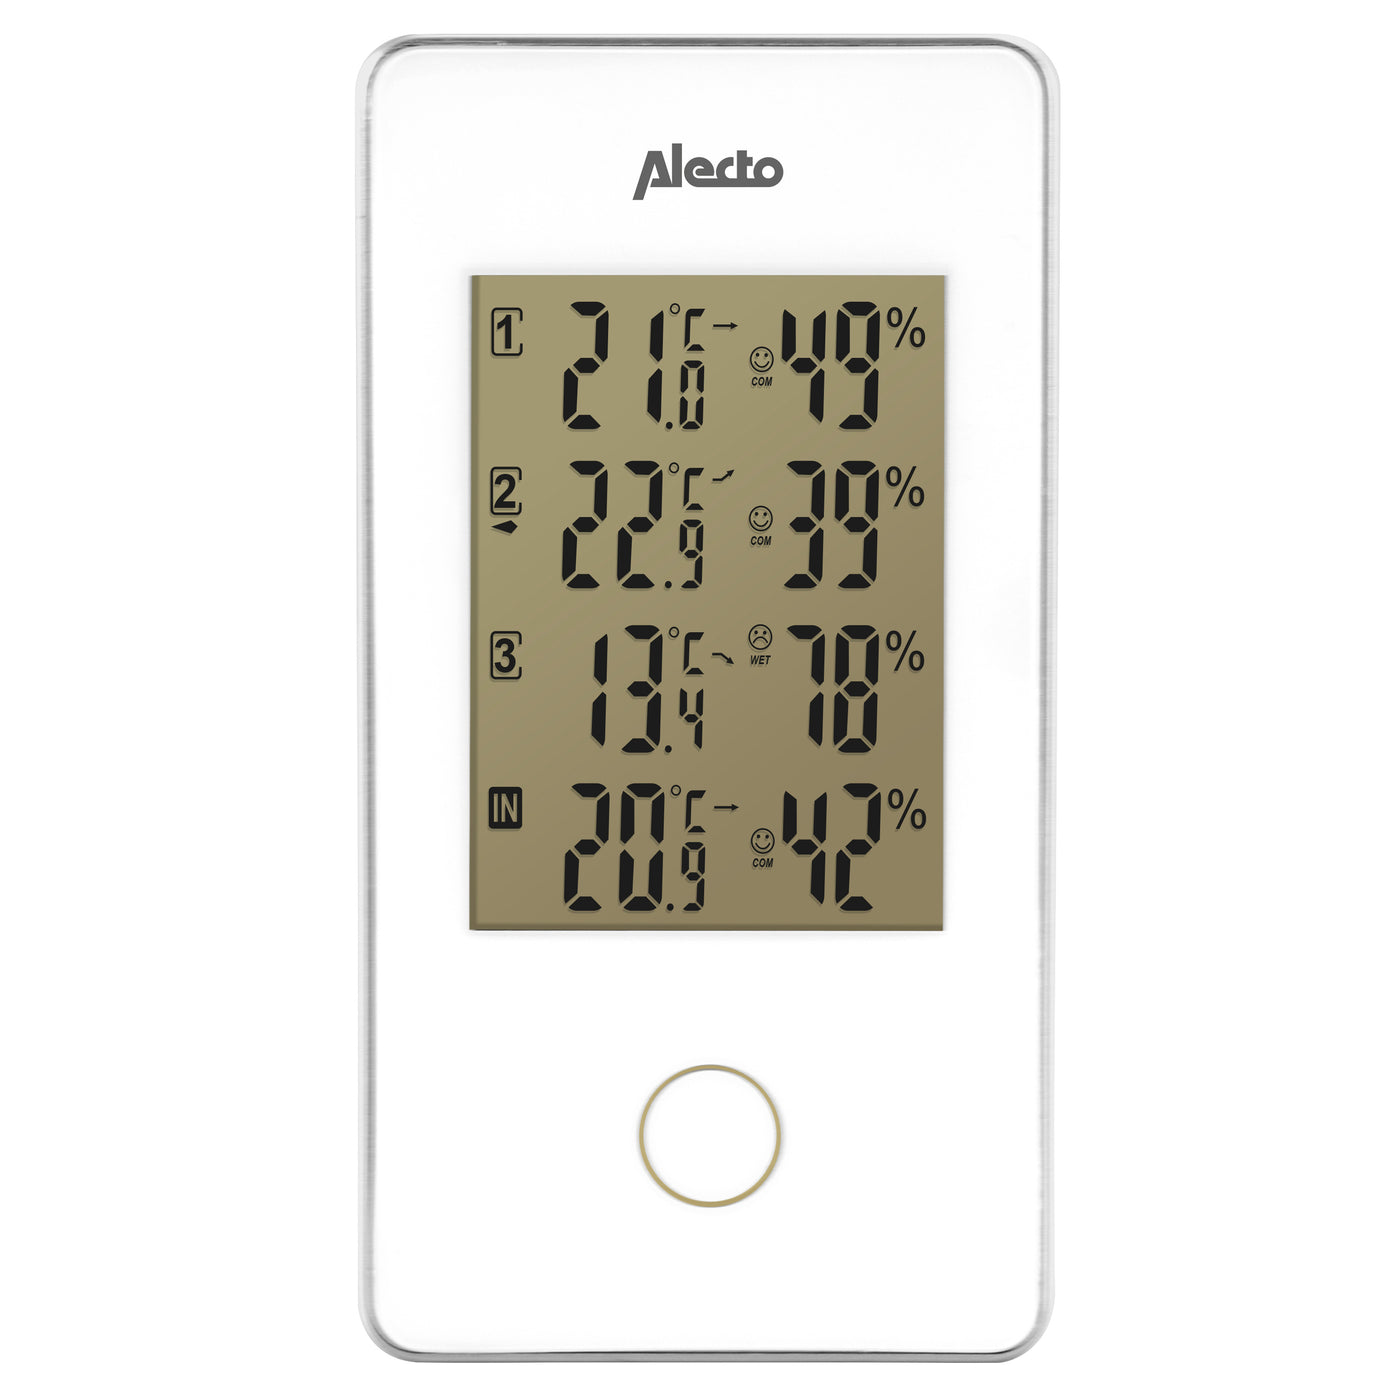 Alecto WS-1330 - Wetterstation mit 3 Außeneinheiten, weiß